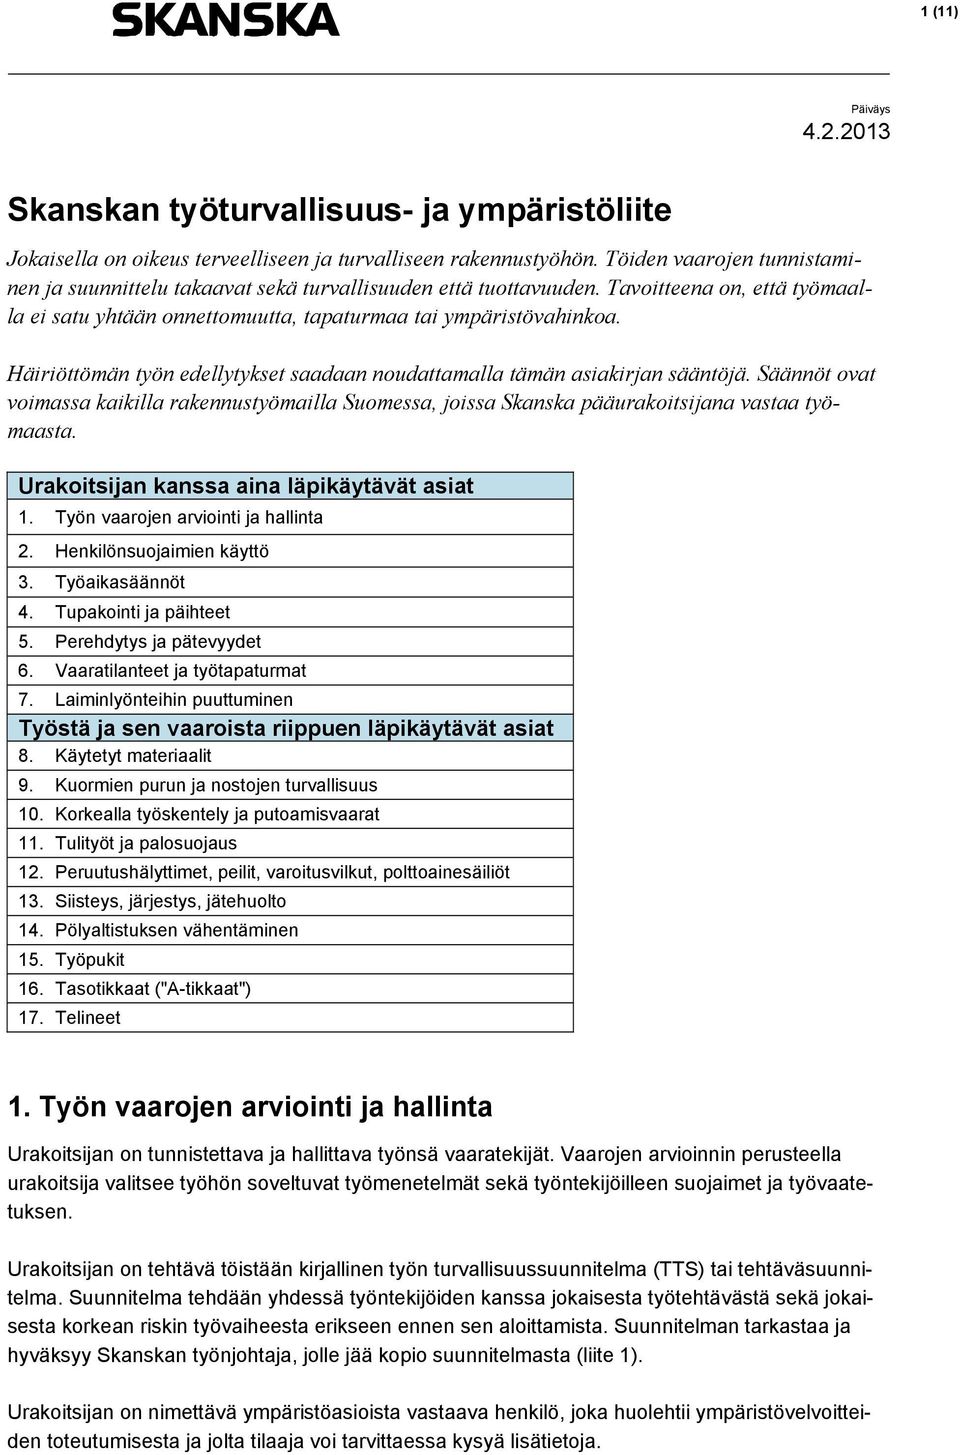 Häiriöttömän työn edellytykset saadaan noudattamalla tämän asiakirjan sääntöjä. Säännöt ovat voimassa kaikilla rakennustyömailla Suomessa, joissa Skanska pääurakoitsijana vastaa työmaasta.